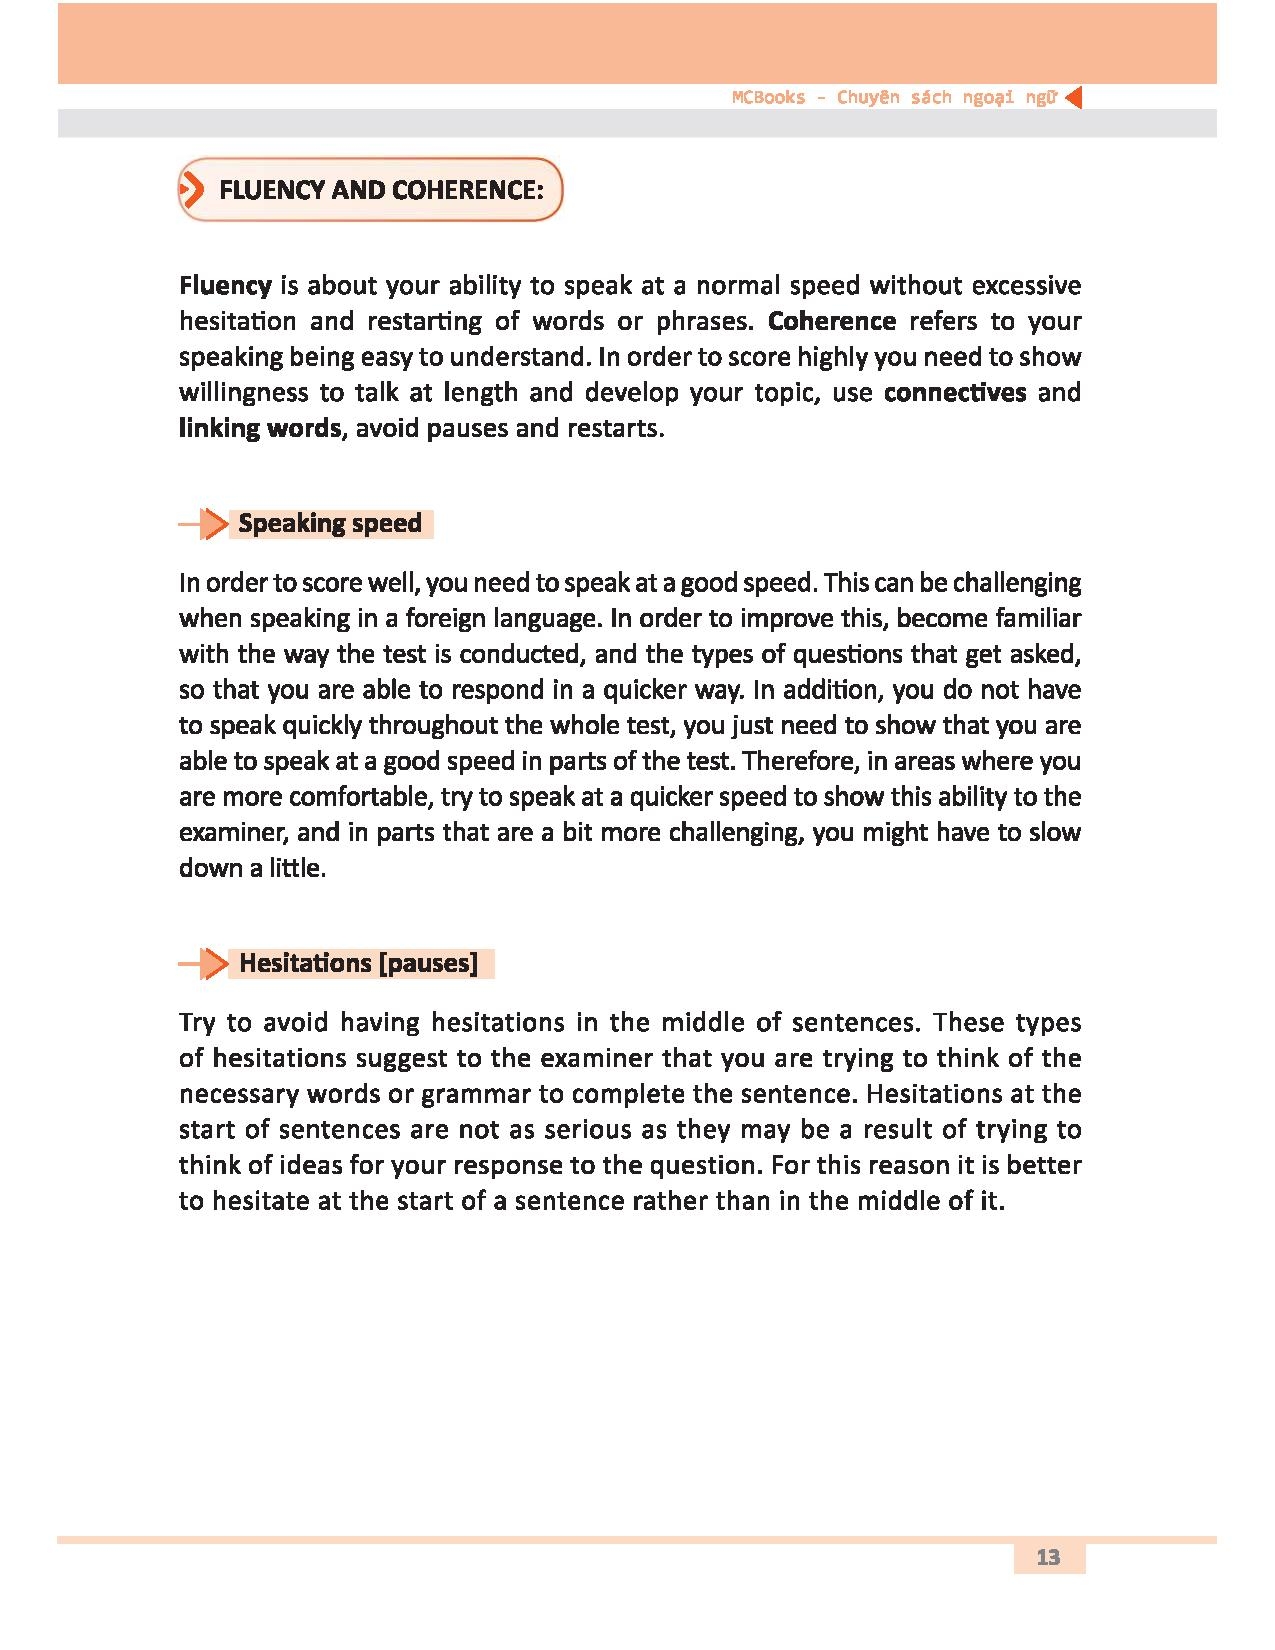 Ielts Speakingsuccess: Skills Strategies And Model Answers PDF